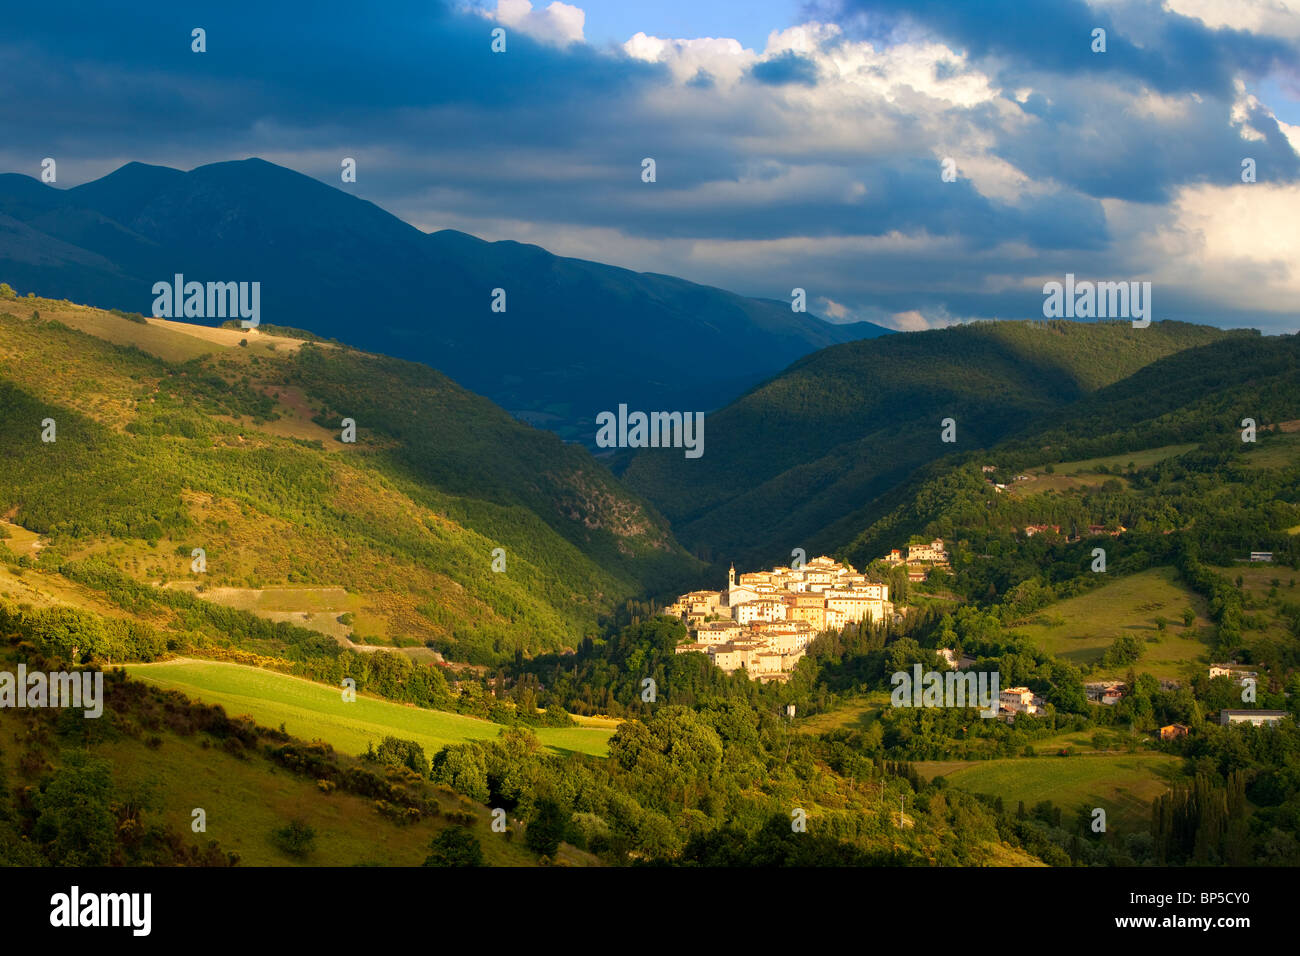 La città medievale di Preci in Valnerina, Parco Nazionale dei Monti Sibillini, Umbria Italia Foto Stock